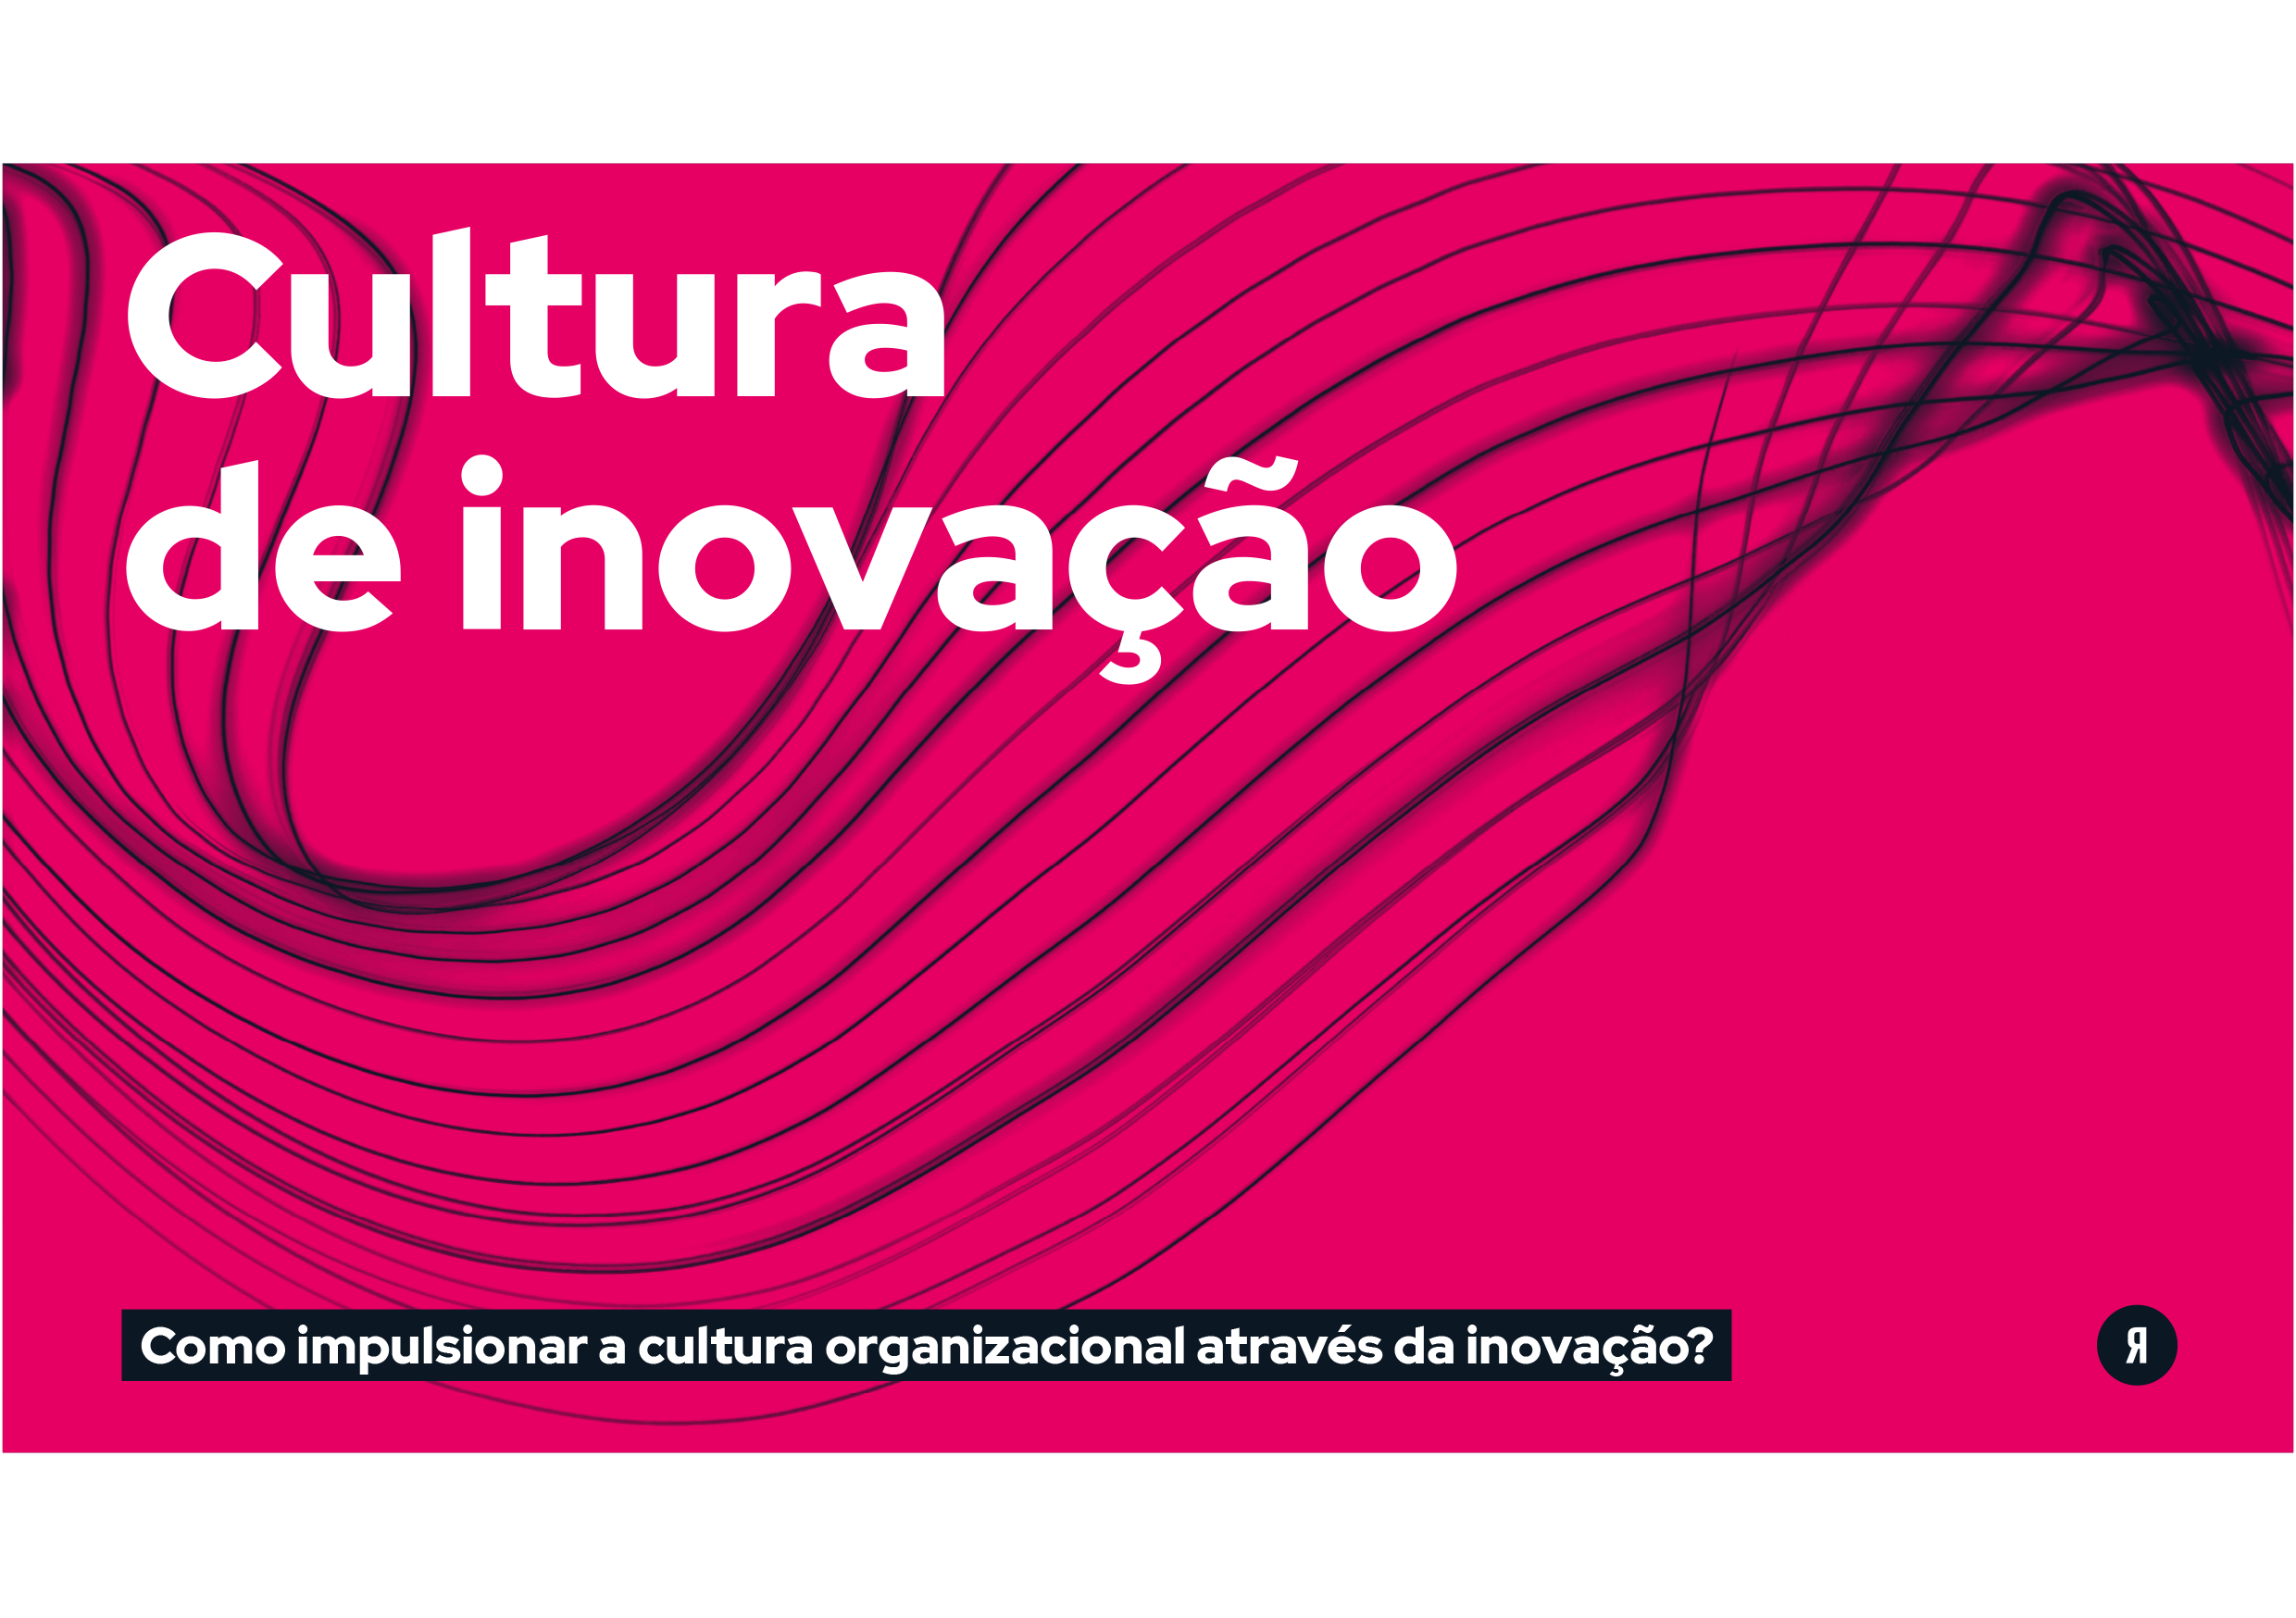 Mockup_Ebook Cultura de Inovação